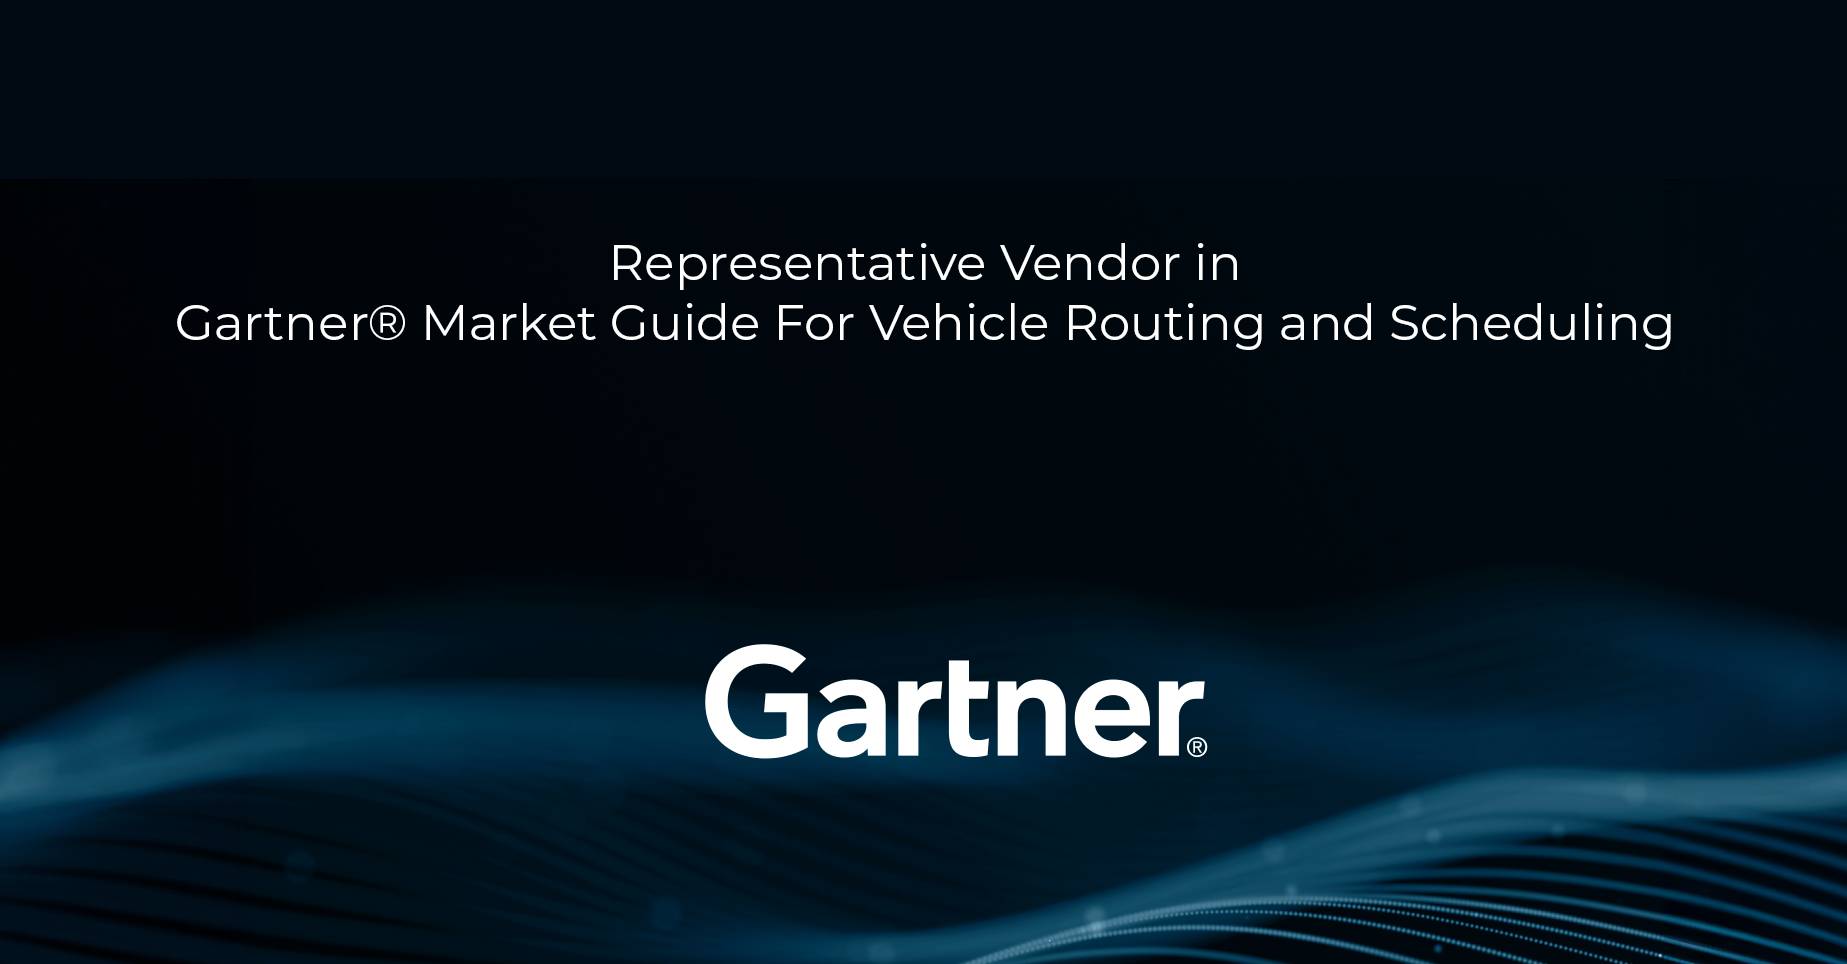 LogiNext nombrado proveedor representativo en la guía del mercado para rutas y programación de vehículos